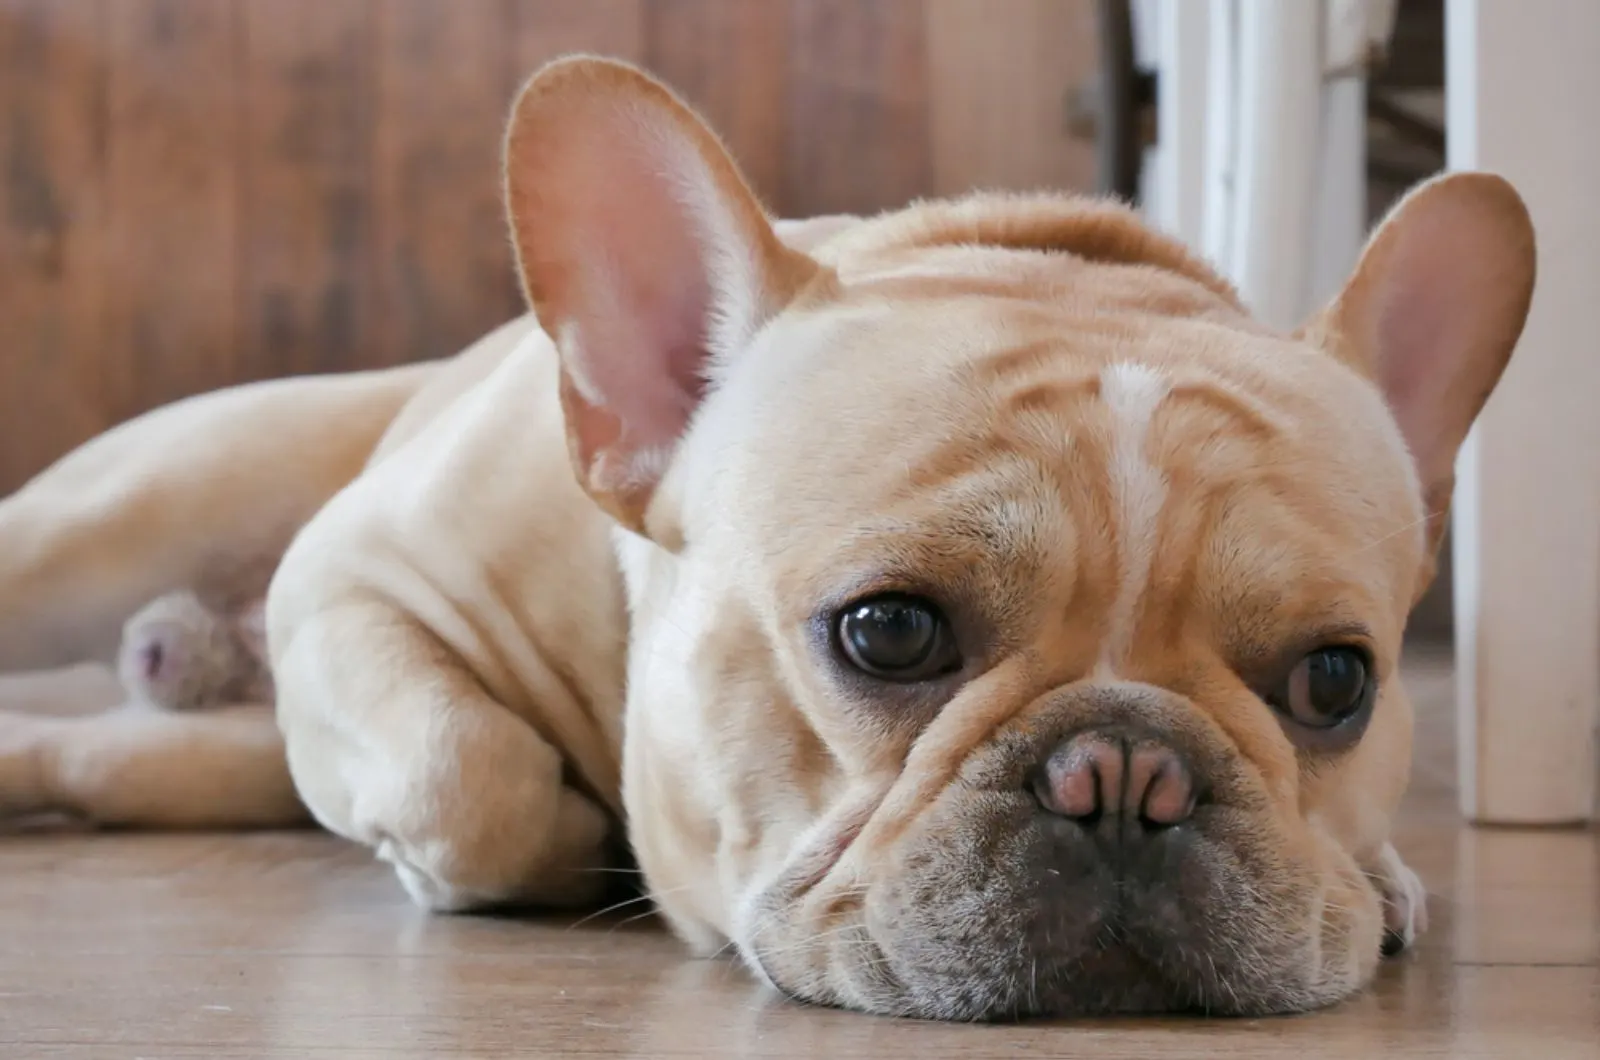 sad french bulldog lying on the floor